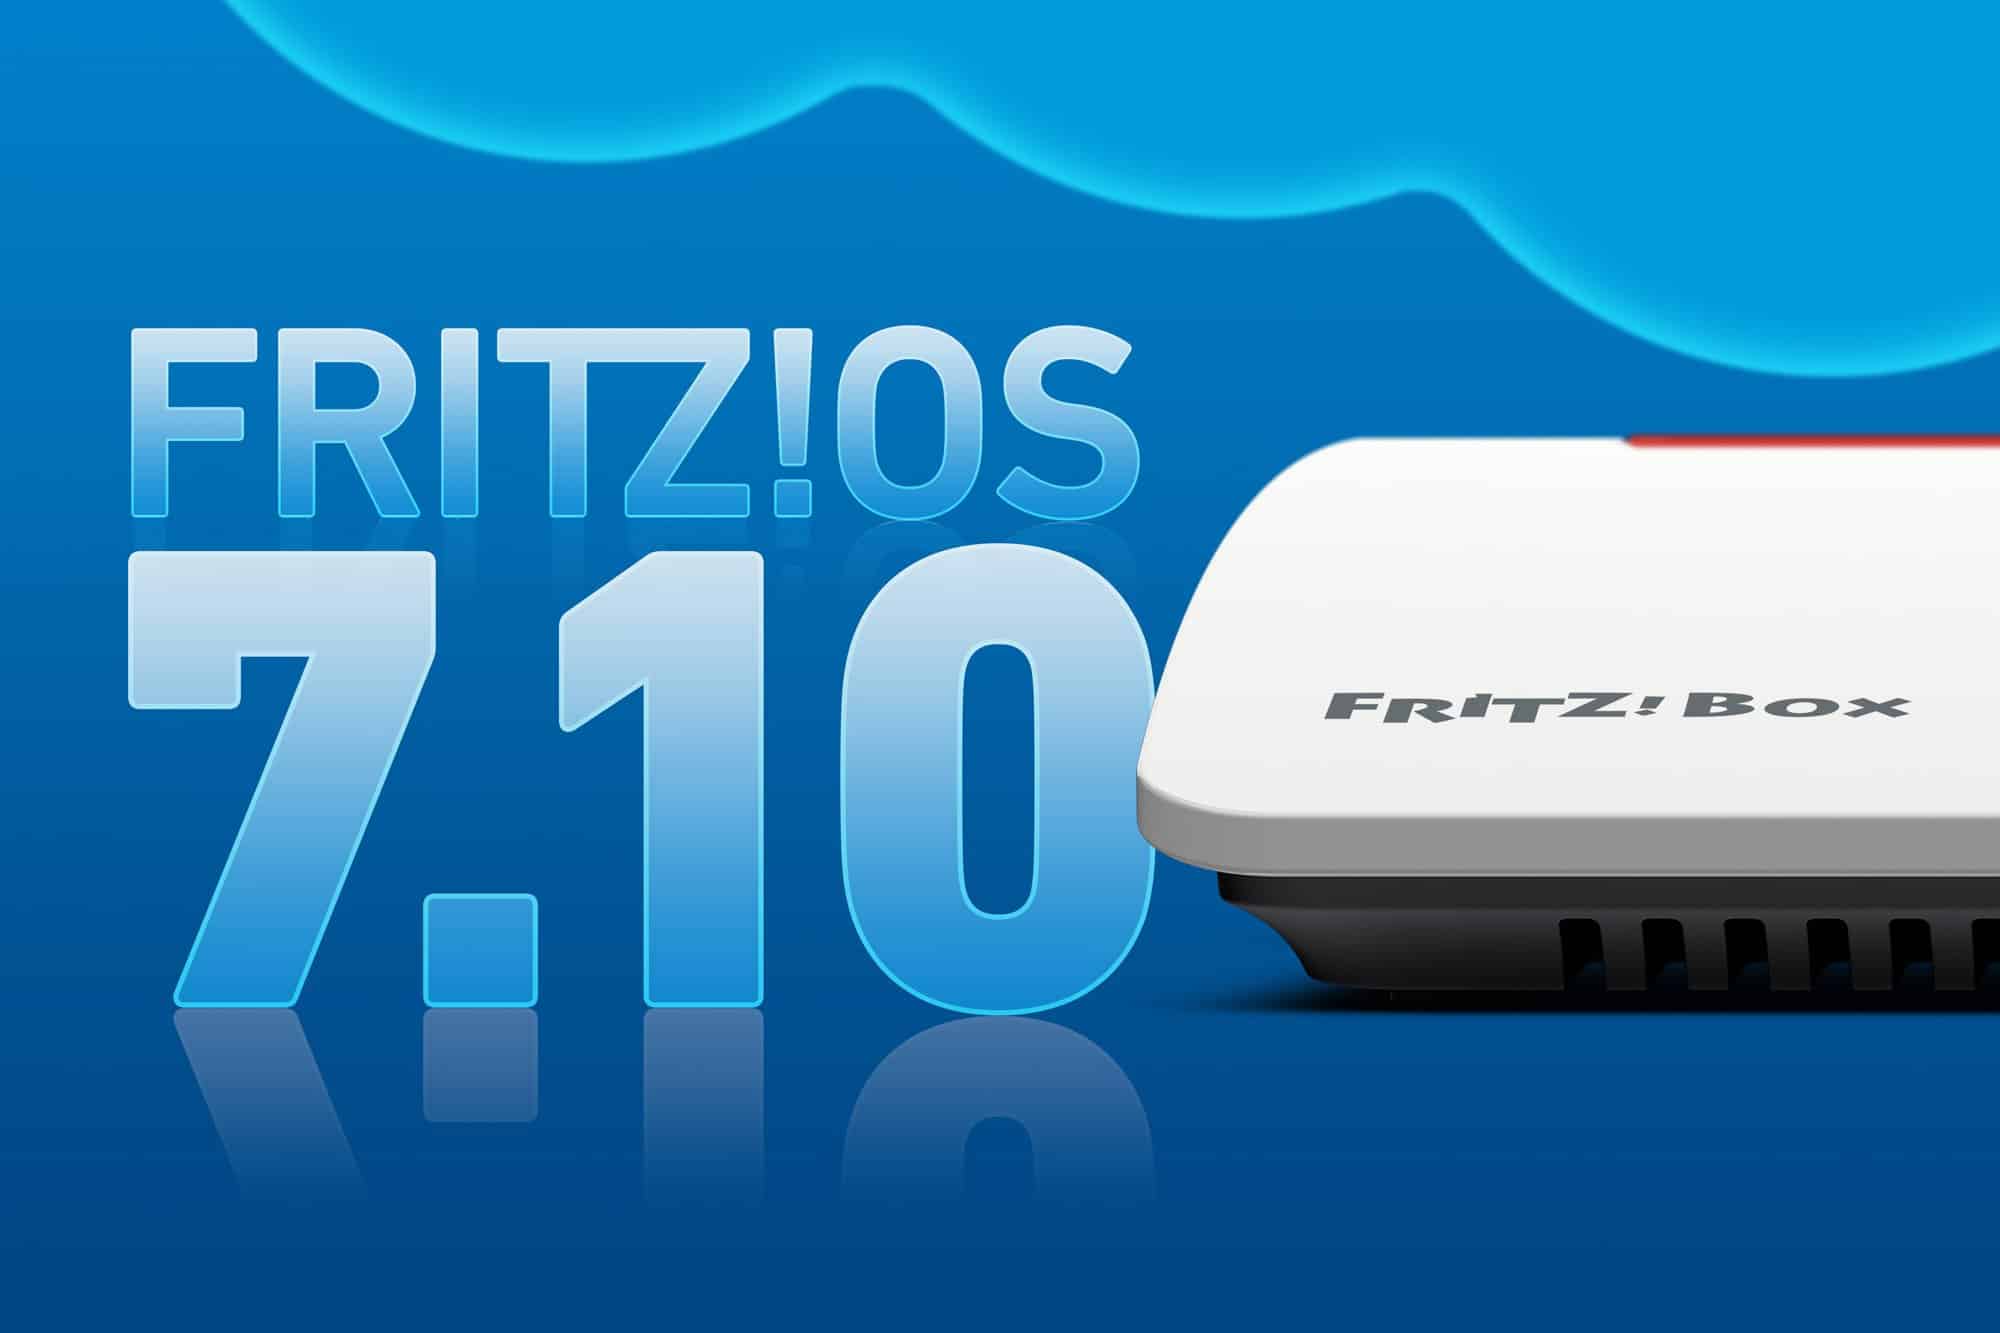 FRITZ!OS 7.10 unveiled: die Highlights der neuen Firmware von AVM